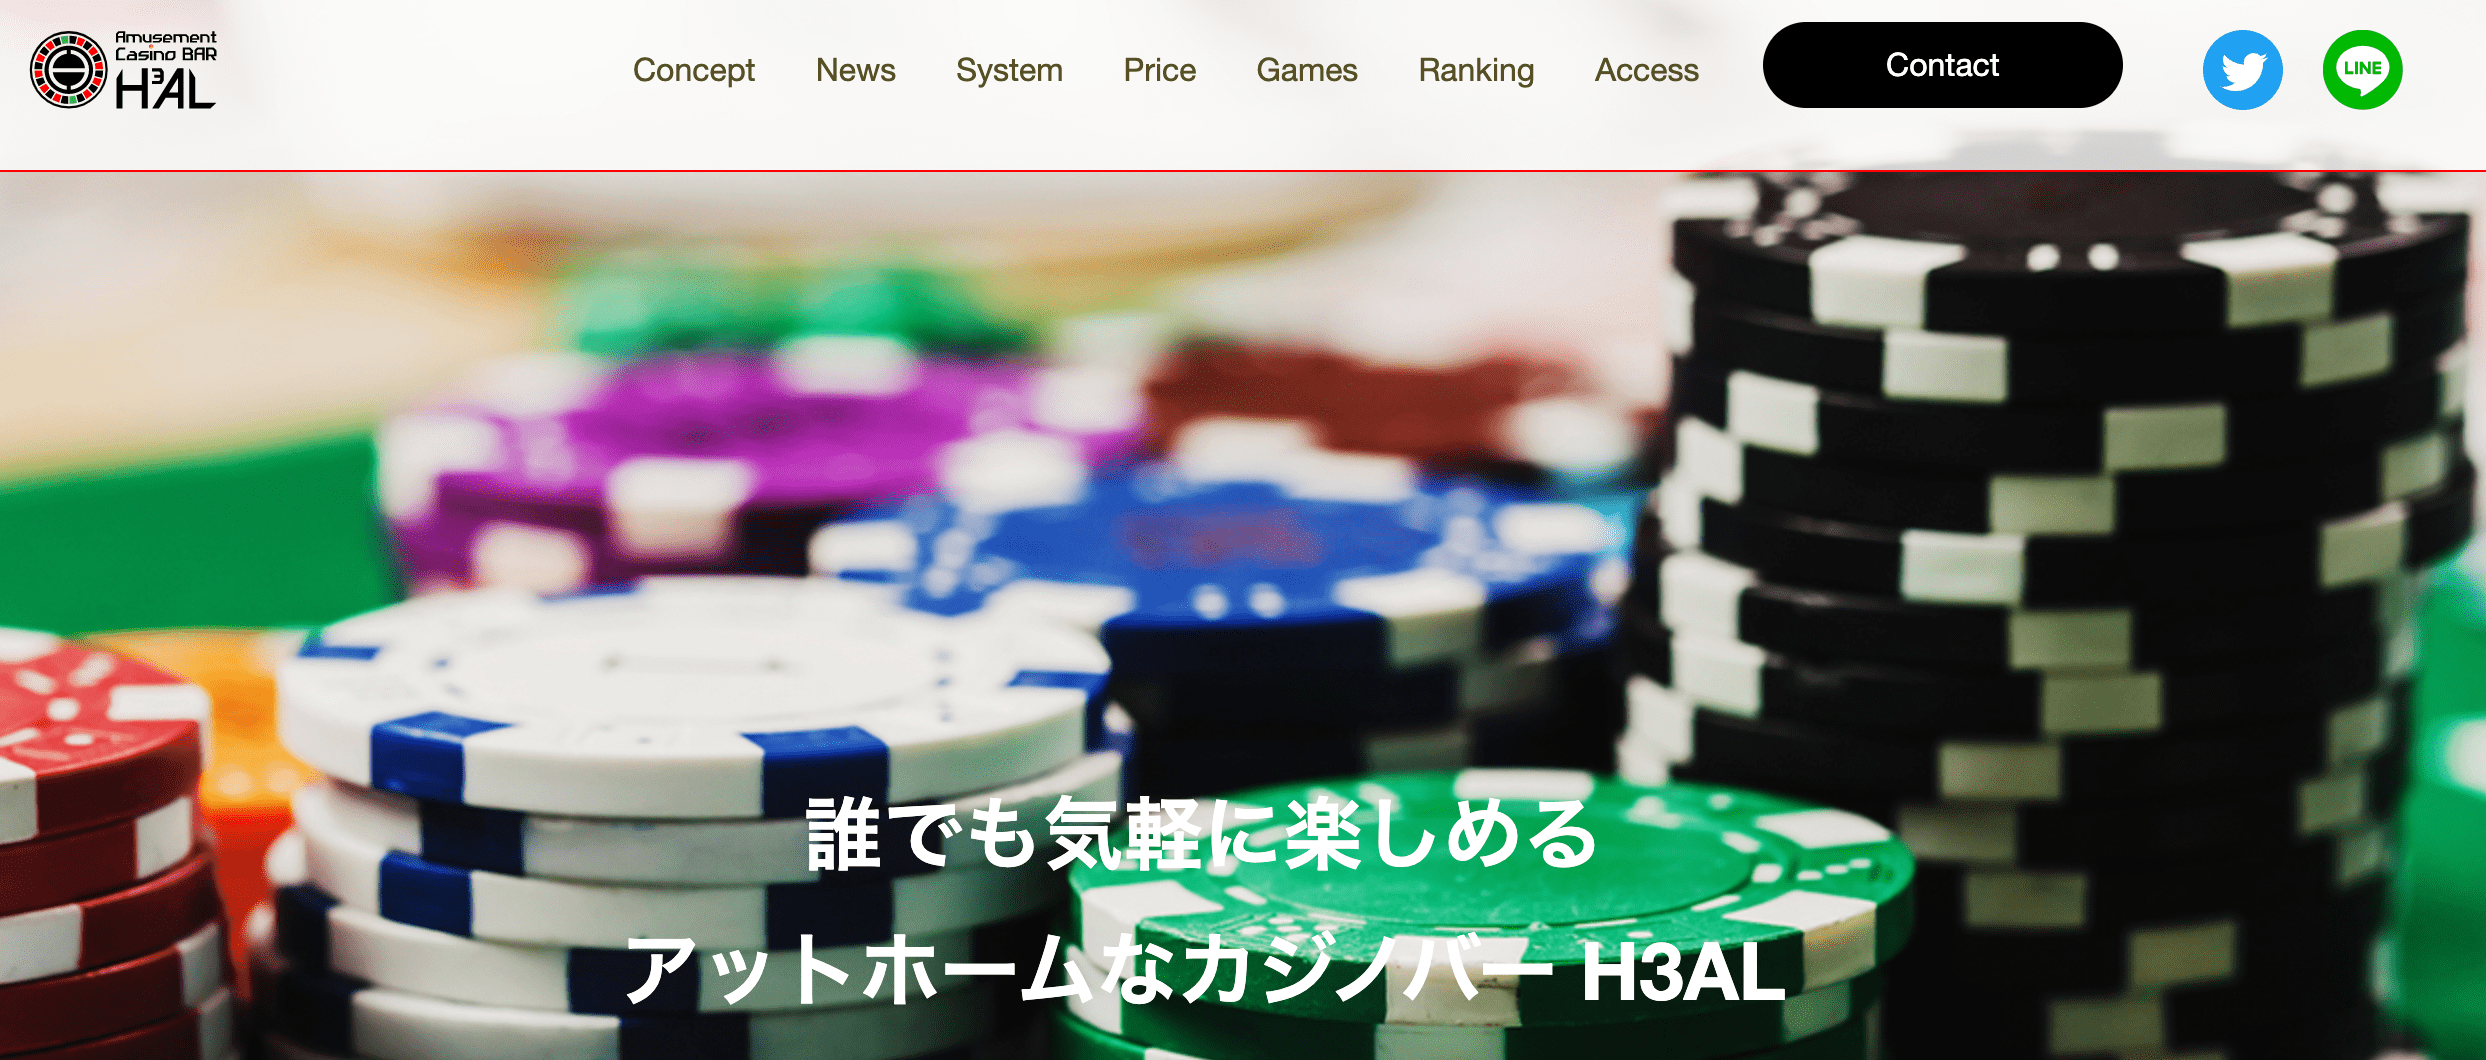 葛西カジノバーH3ALのホームページ